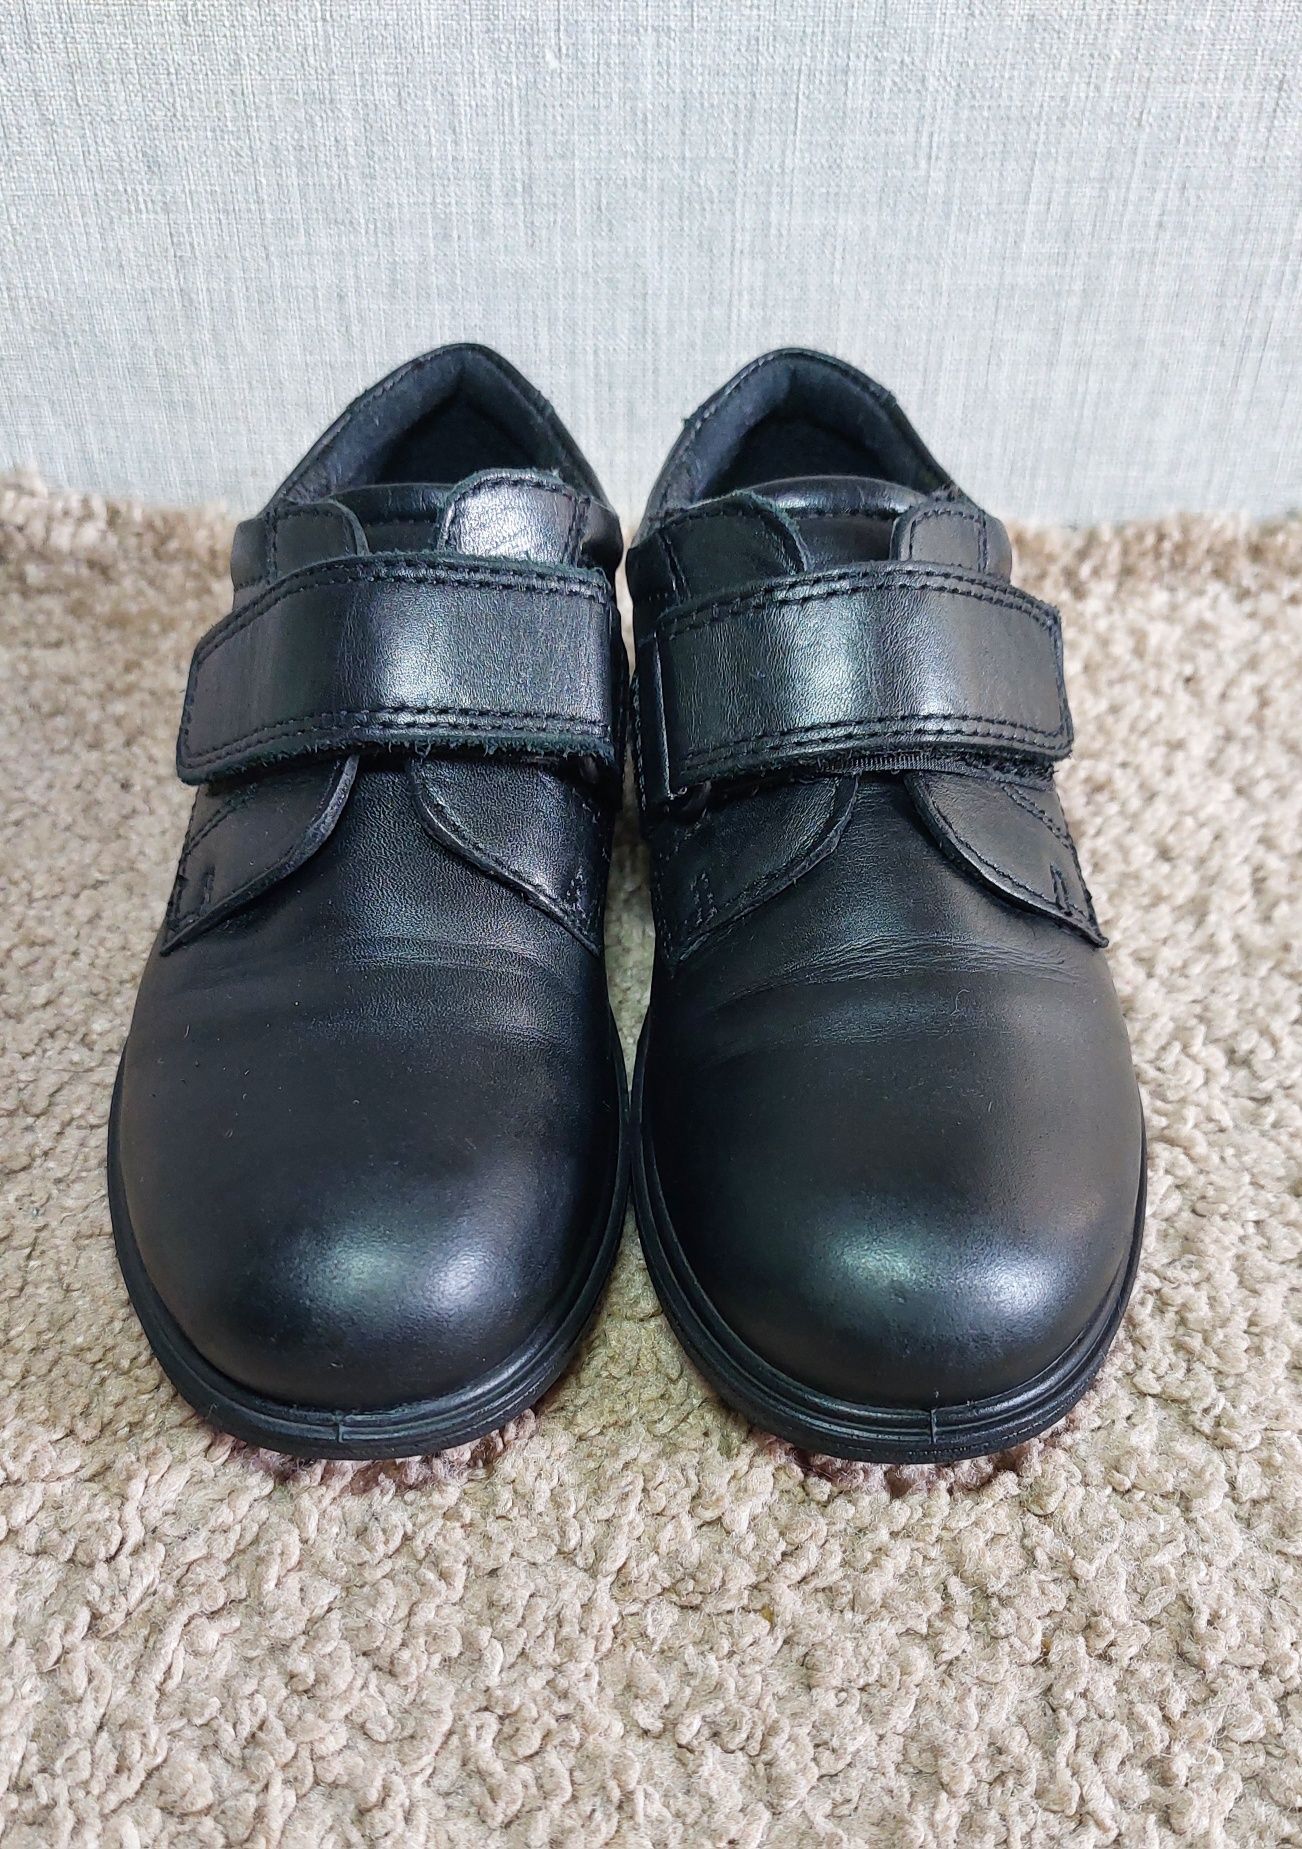 Кожаные детские туфли на мальчика ECCO Cohen. 28 р., стелька 17,5 см.